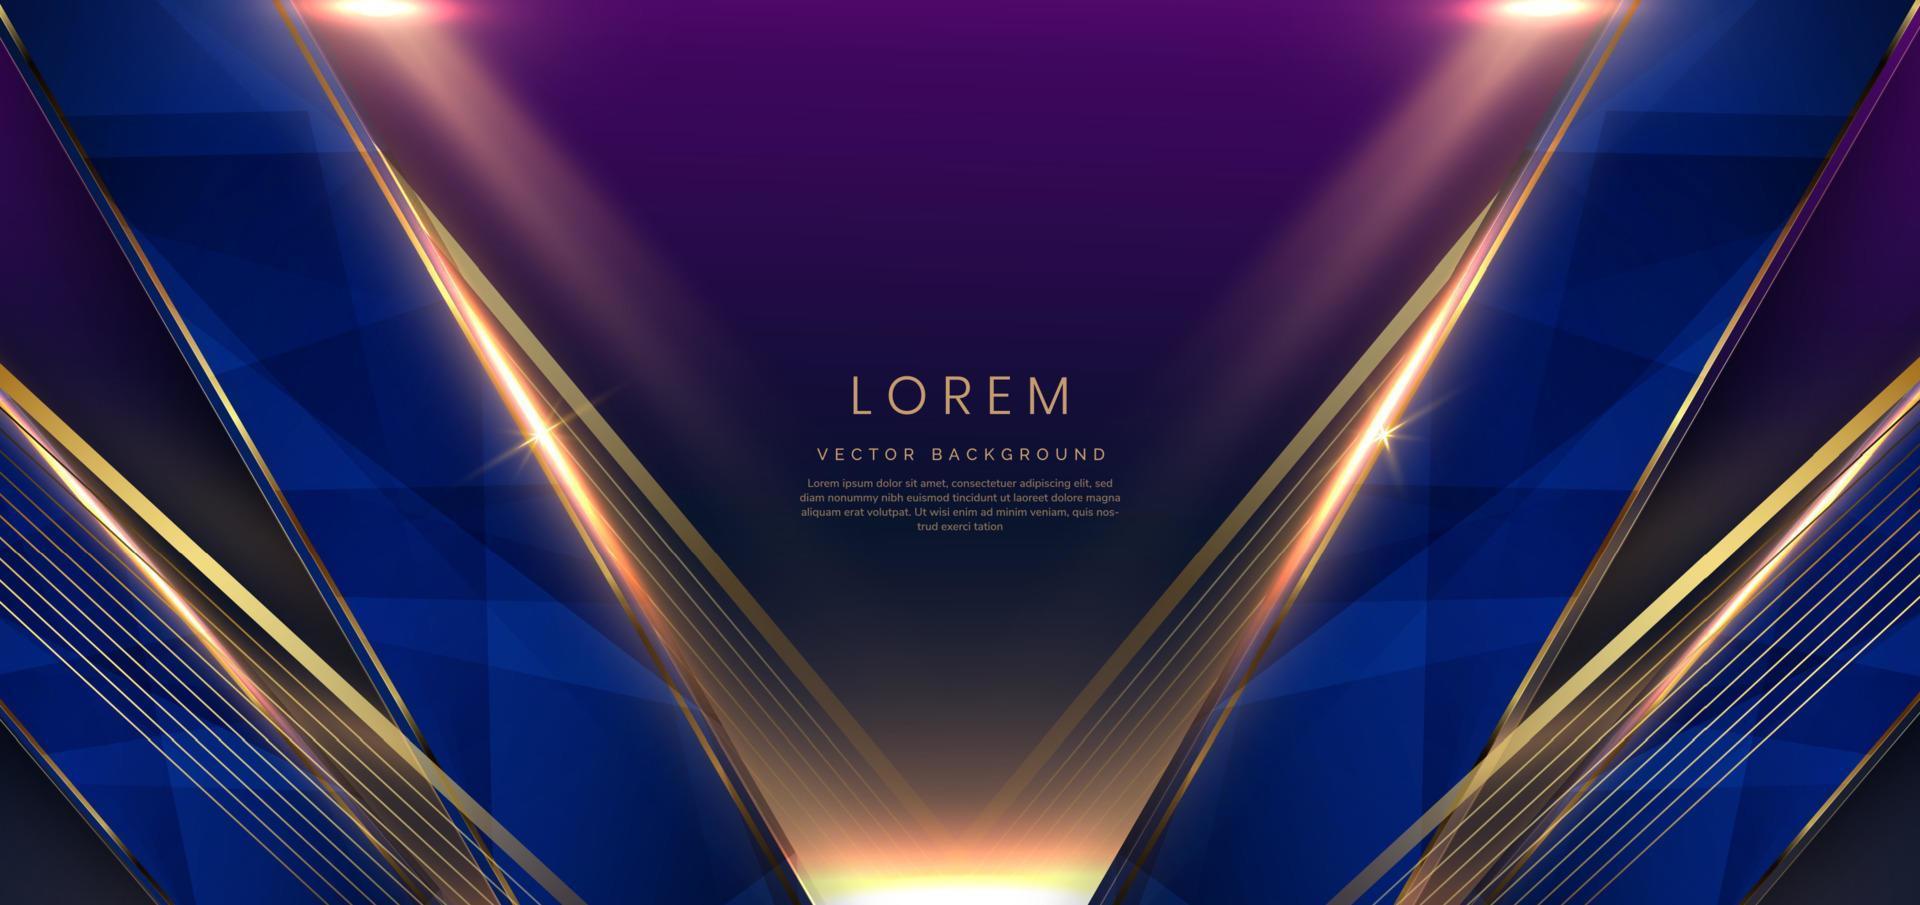 abstracte luxe gouden lijnen diagonaal overlappen op donkerblauwe achtergrond met lichteffect. sjabloon premium award ontwerp. vector